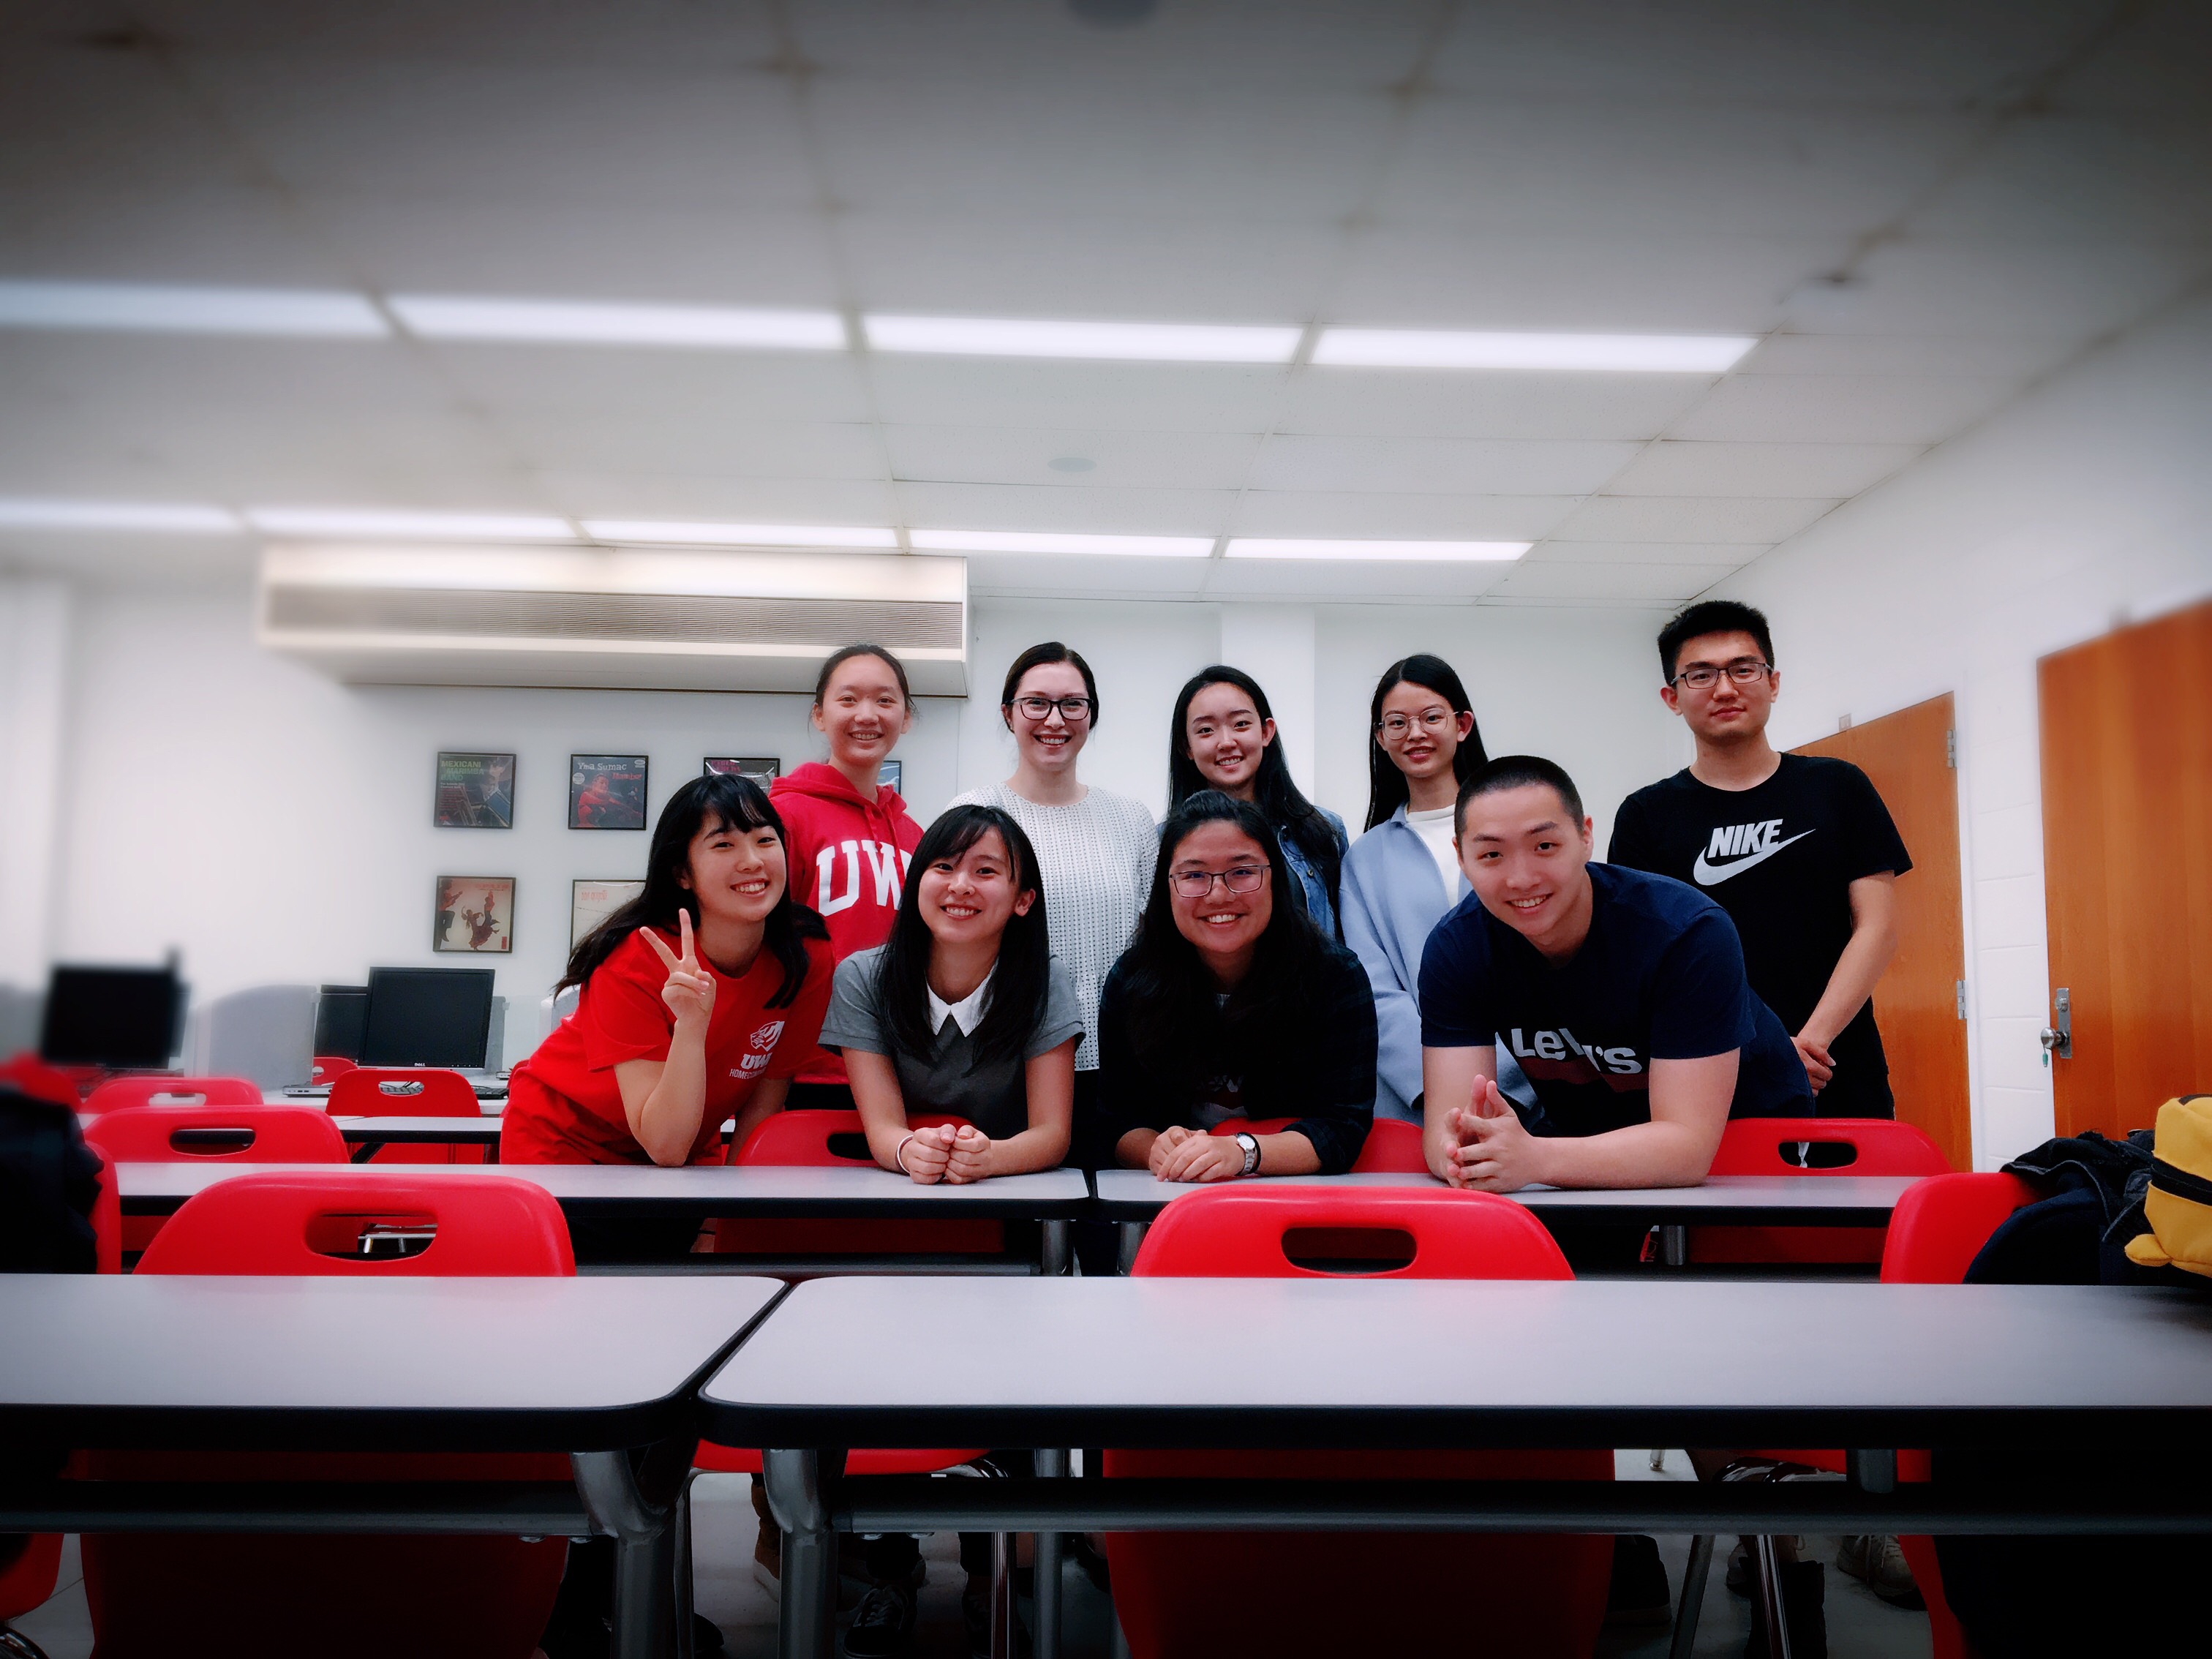 ESLの先生とクラスメイト達と。無事にクラスが終わった後の達成感でみんな笑顔です。